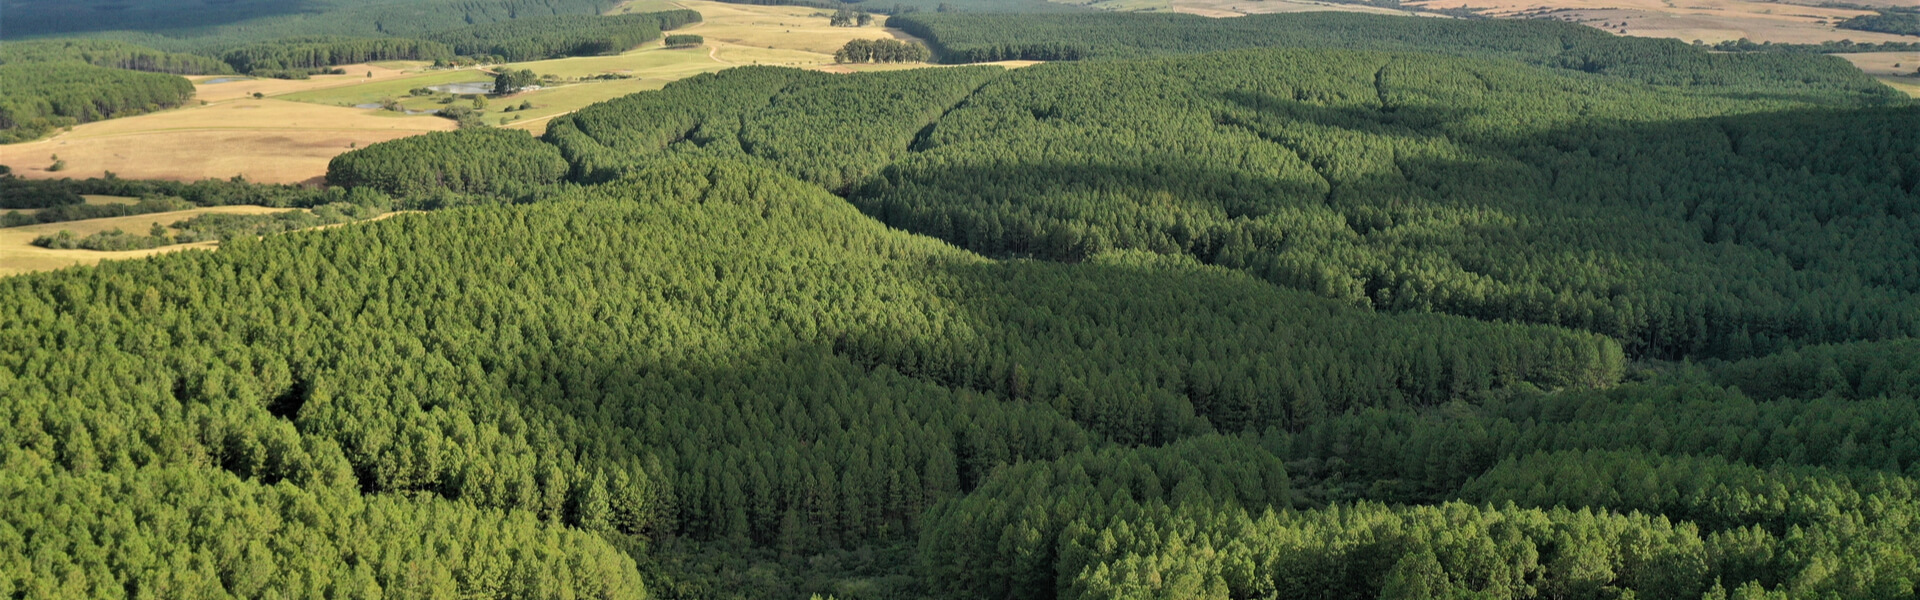 Quản lý rừng: lập kế hoạch, thực hiện và thực hành: Hãy cùng chúng tôi tìm hiểu về quy trình quản lý rừng một cách chi tiết, bao gồm lập kế hoạch, thực hiện và thực hành. Bằng cách kết hợp các kỹ thuật và công nghệ hiện đại, chúng ta sẽ tìm ra những cách tiếp cận mới trong việc quản lý tài nguyên rừng phù hợp với môi trường và xã hội.